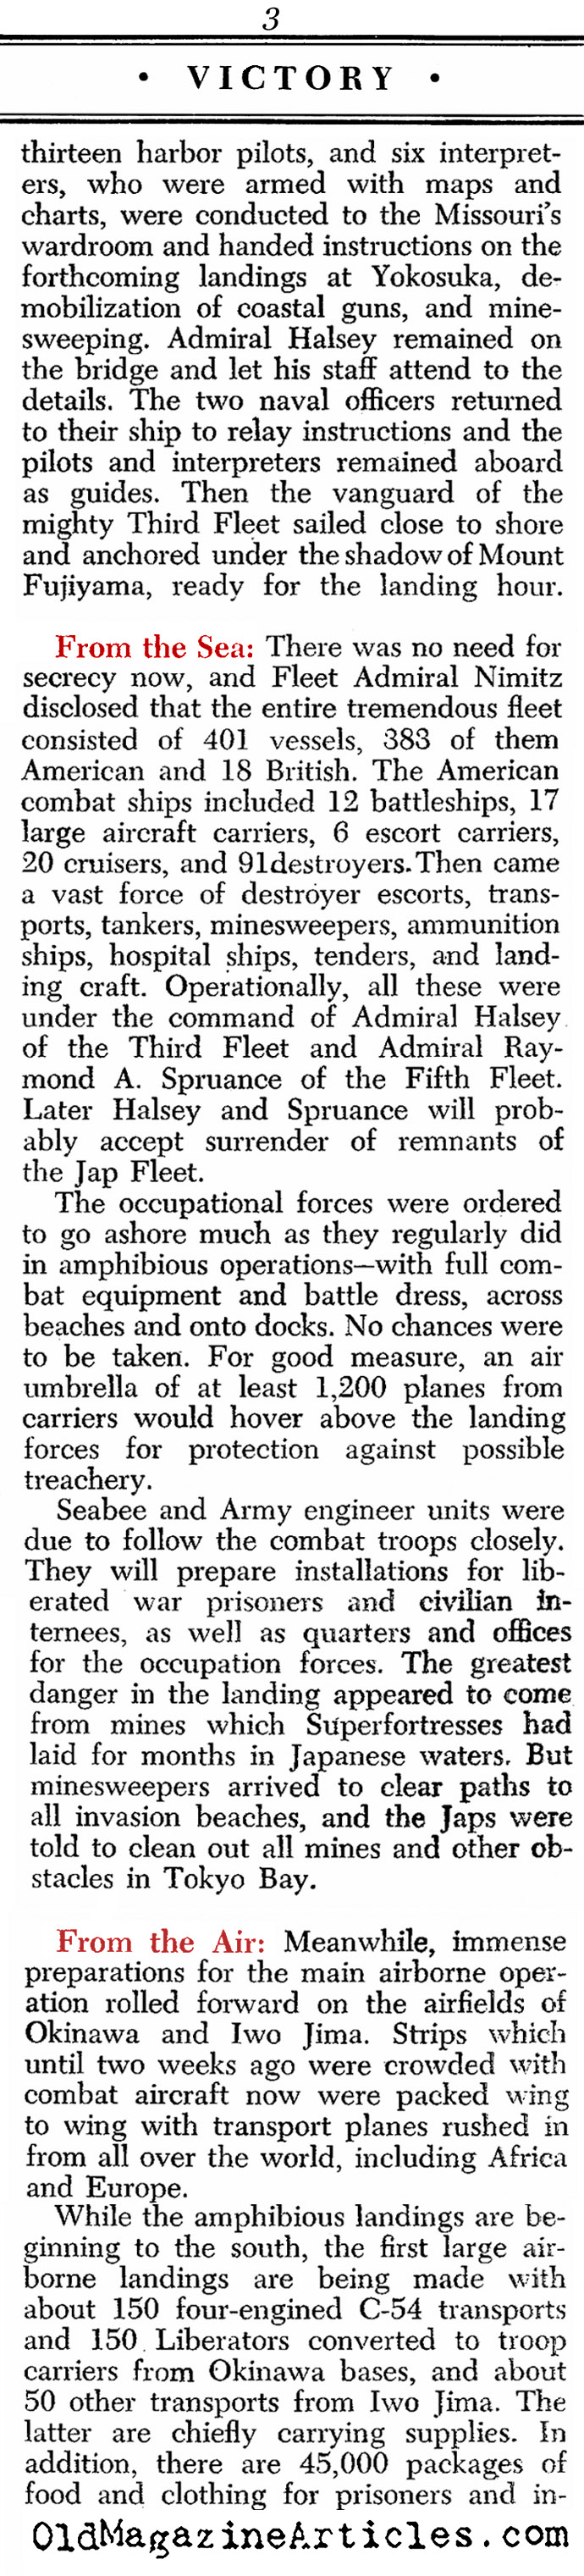 Occupation Begins (Newsweek Magazine, 1945)